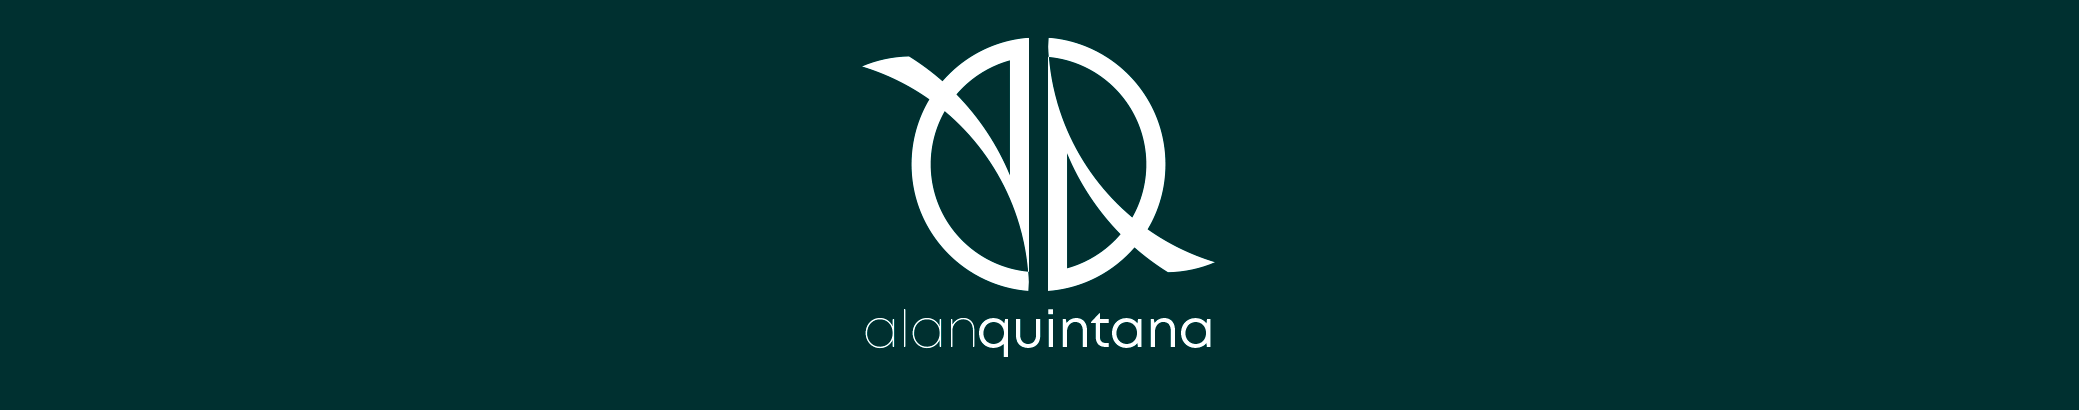 Banner profilu uživatele Alan Quintana